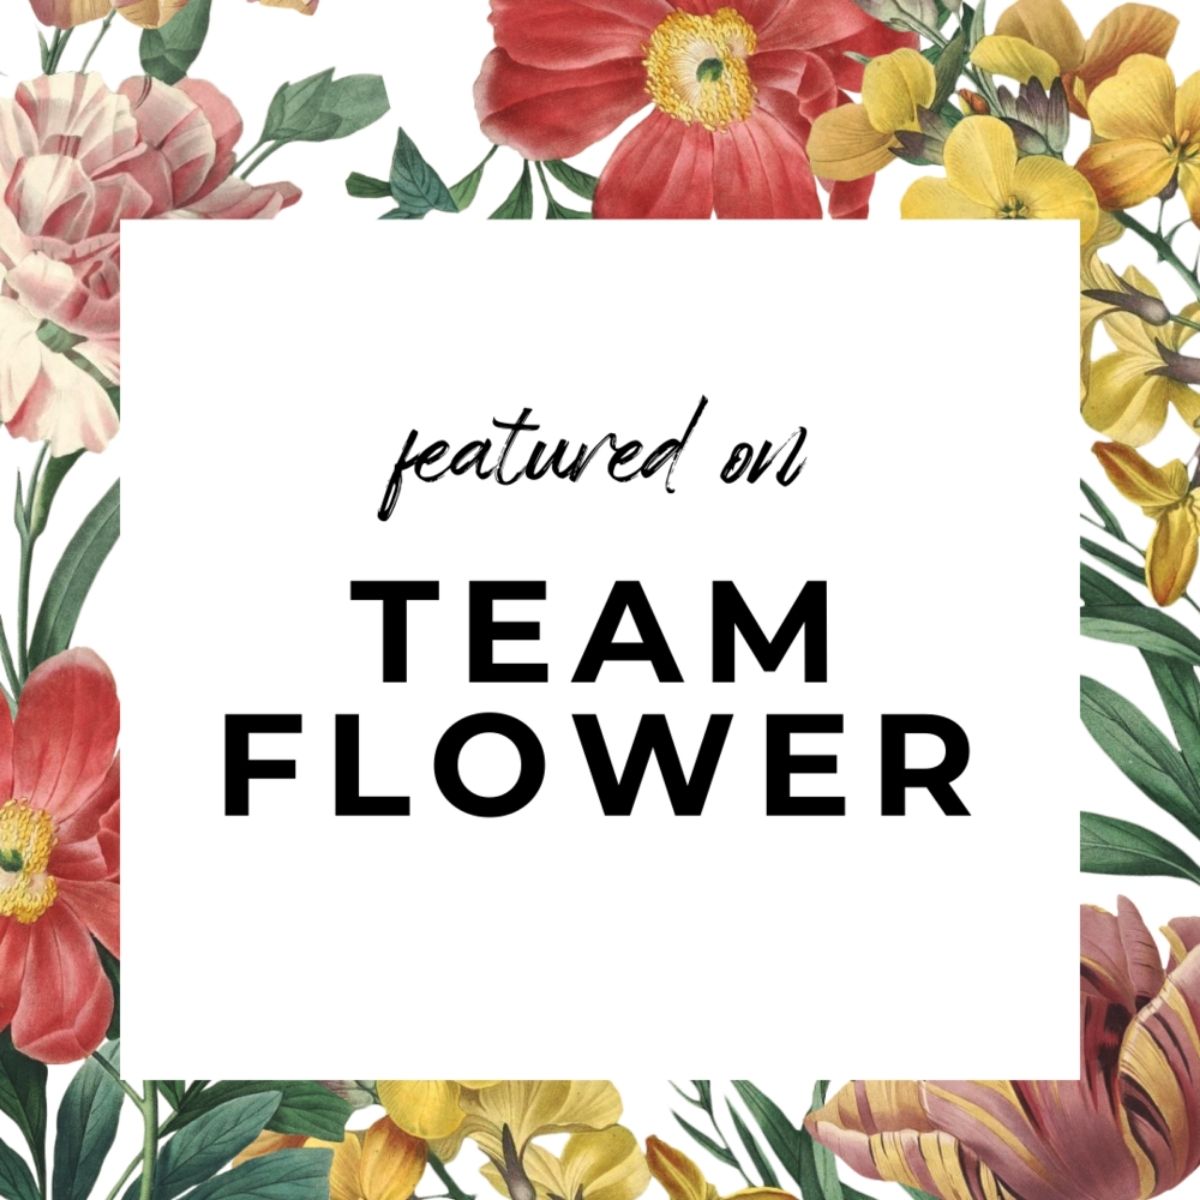 Team flower podcast logo on thursd